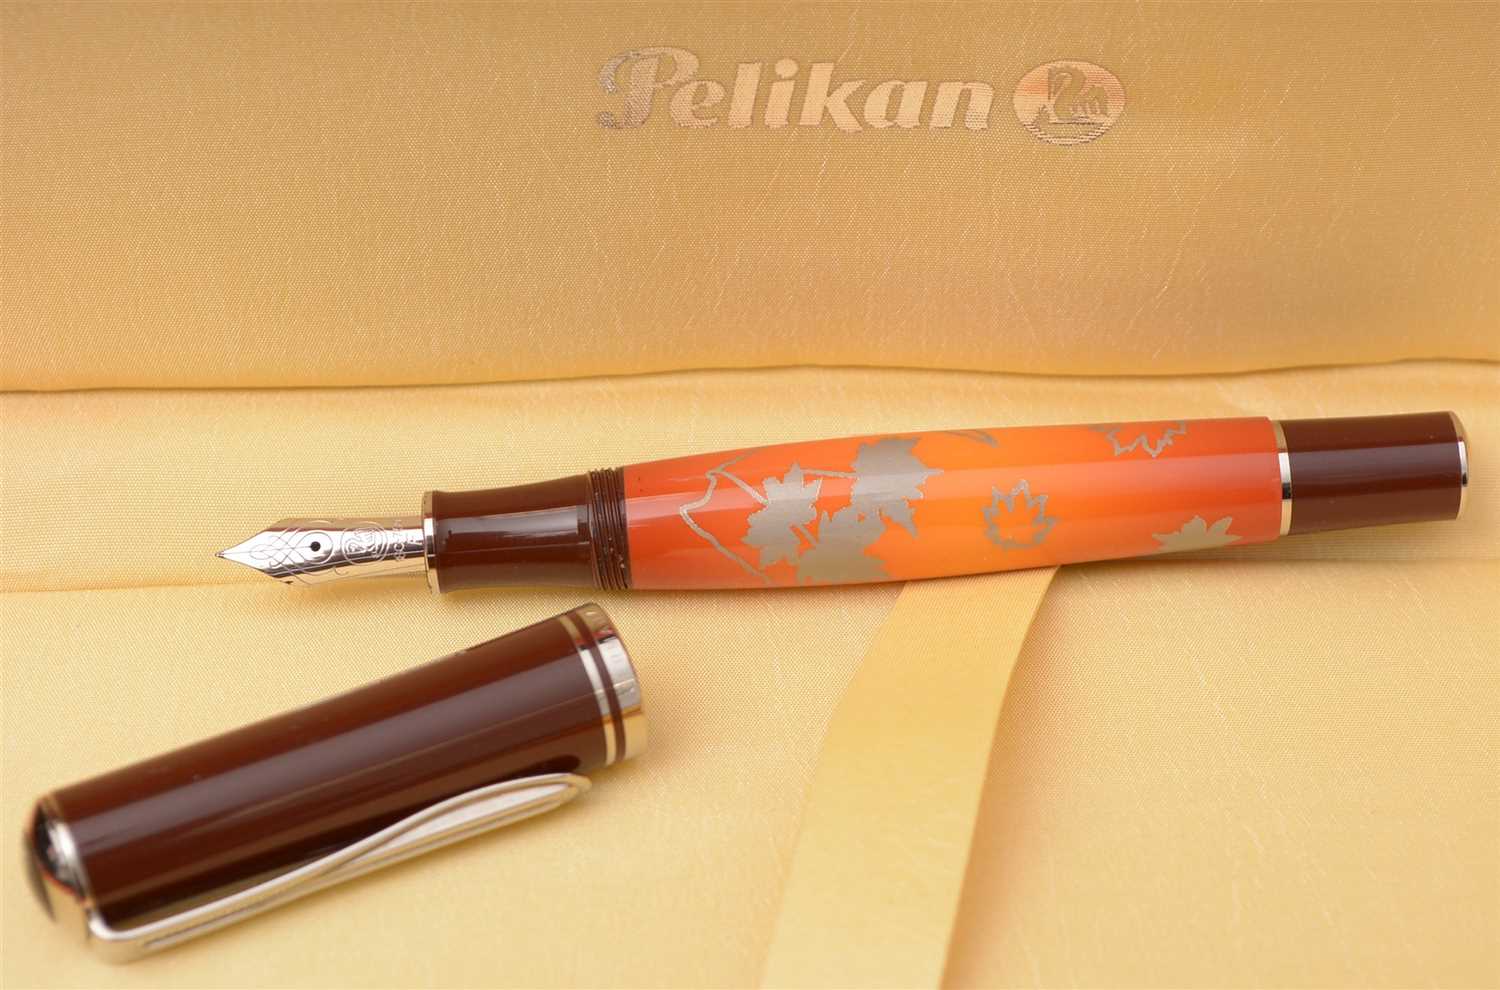 Lot 1468 - Pelikan fountain pen